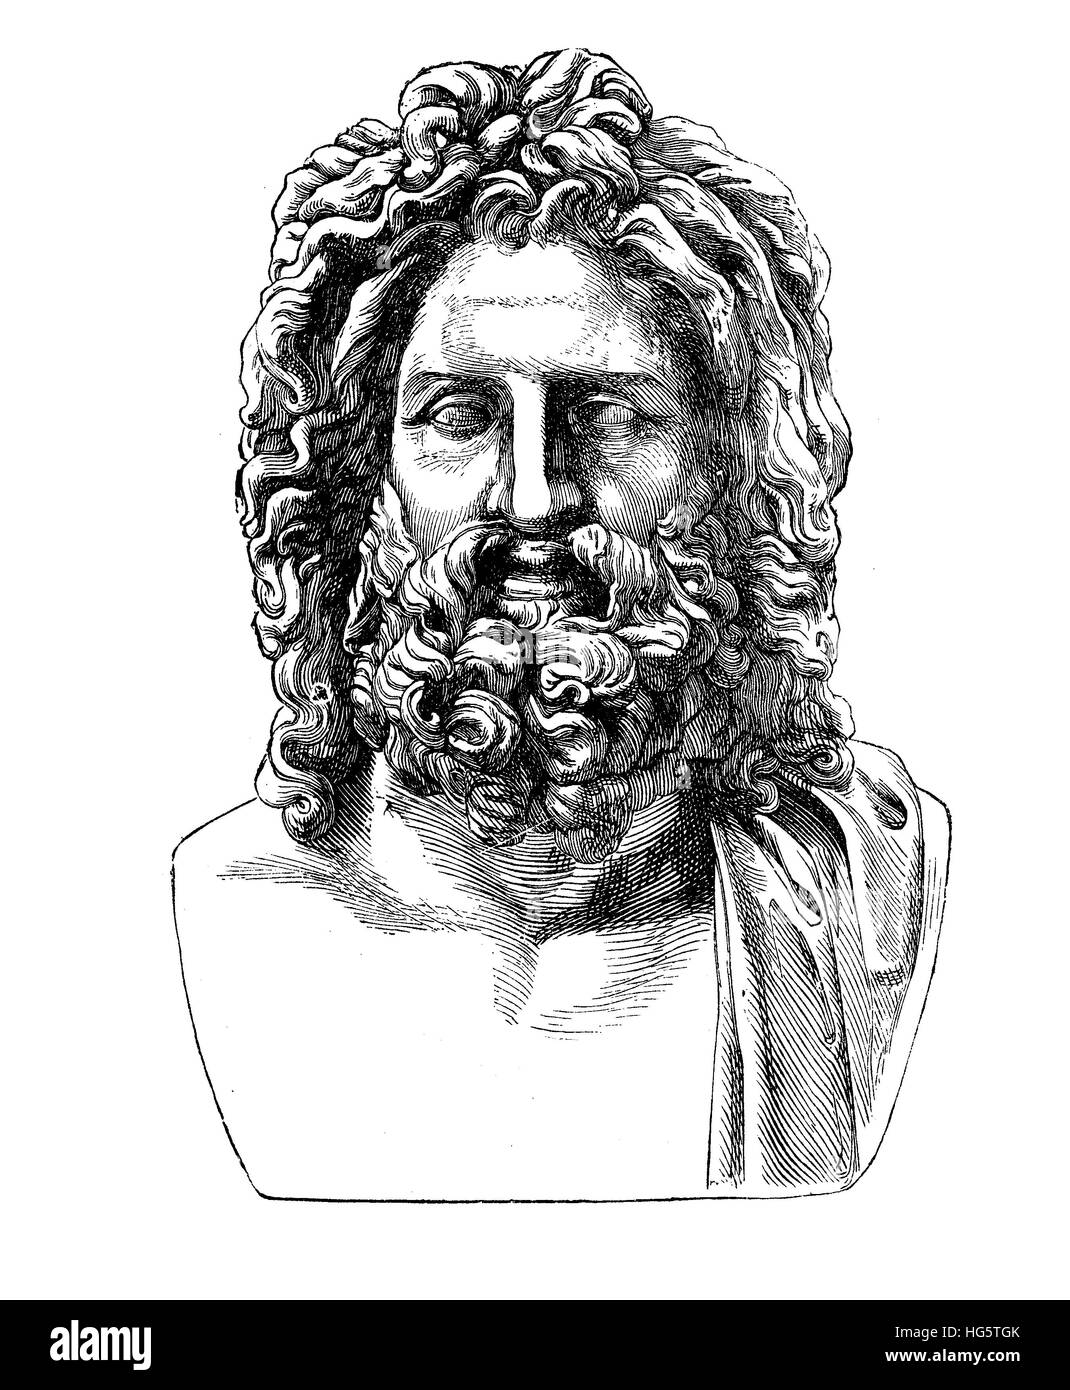 Antike römische Büste des griechischen Gottes Zeus, gefunden in der umbrischen Stadt Otricoli im Jahre 1775, jetzt im Vatikanischen museum Stockfoto